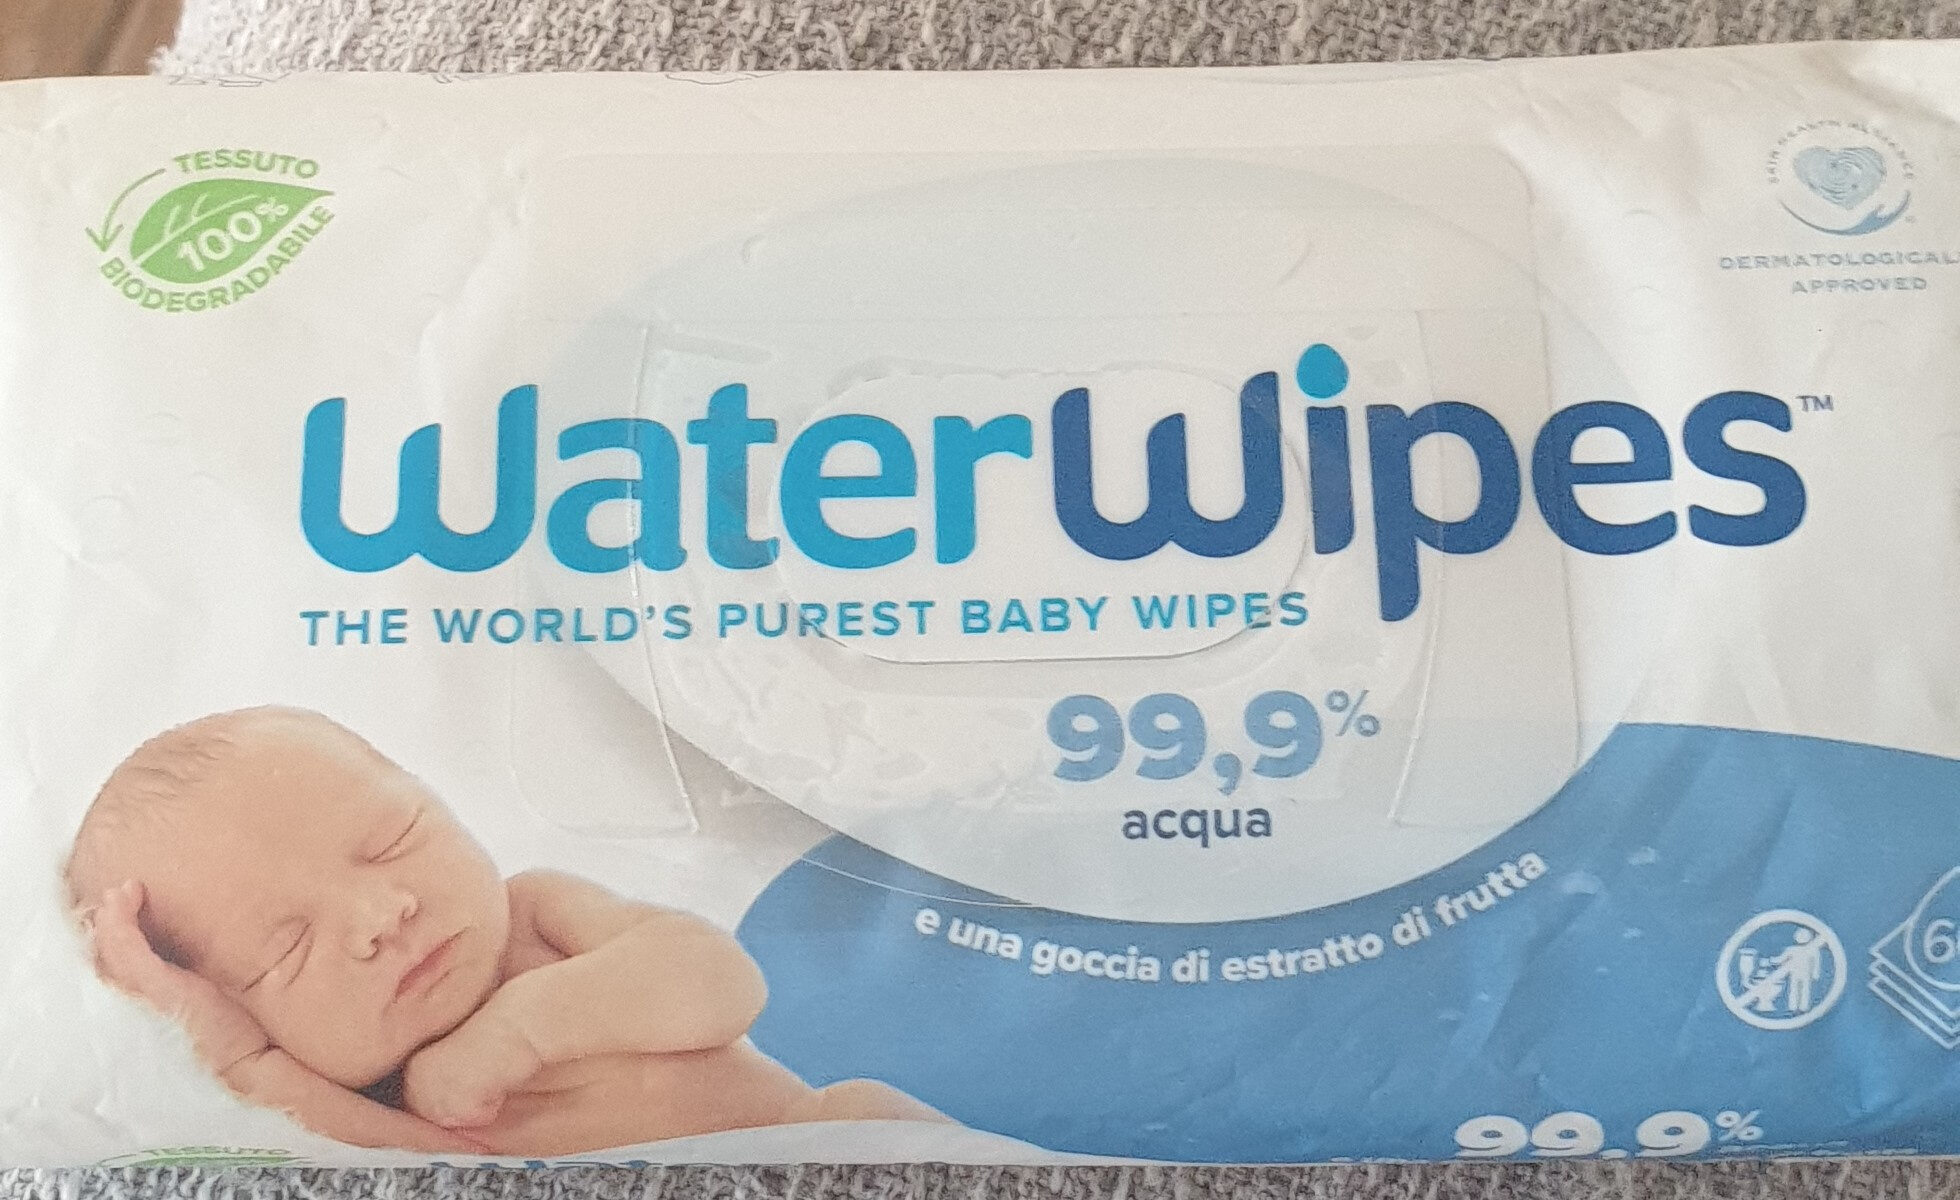 Lingettes WaterWipes - Lingettes nettoyantes pour Bébé